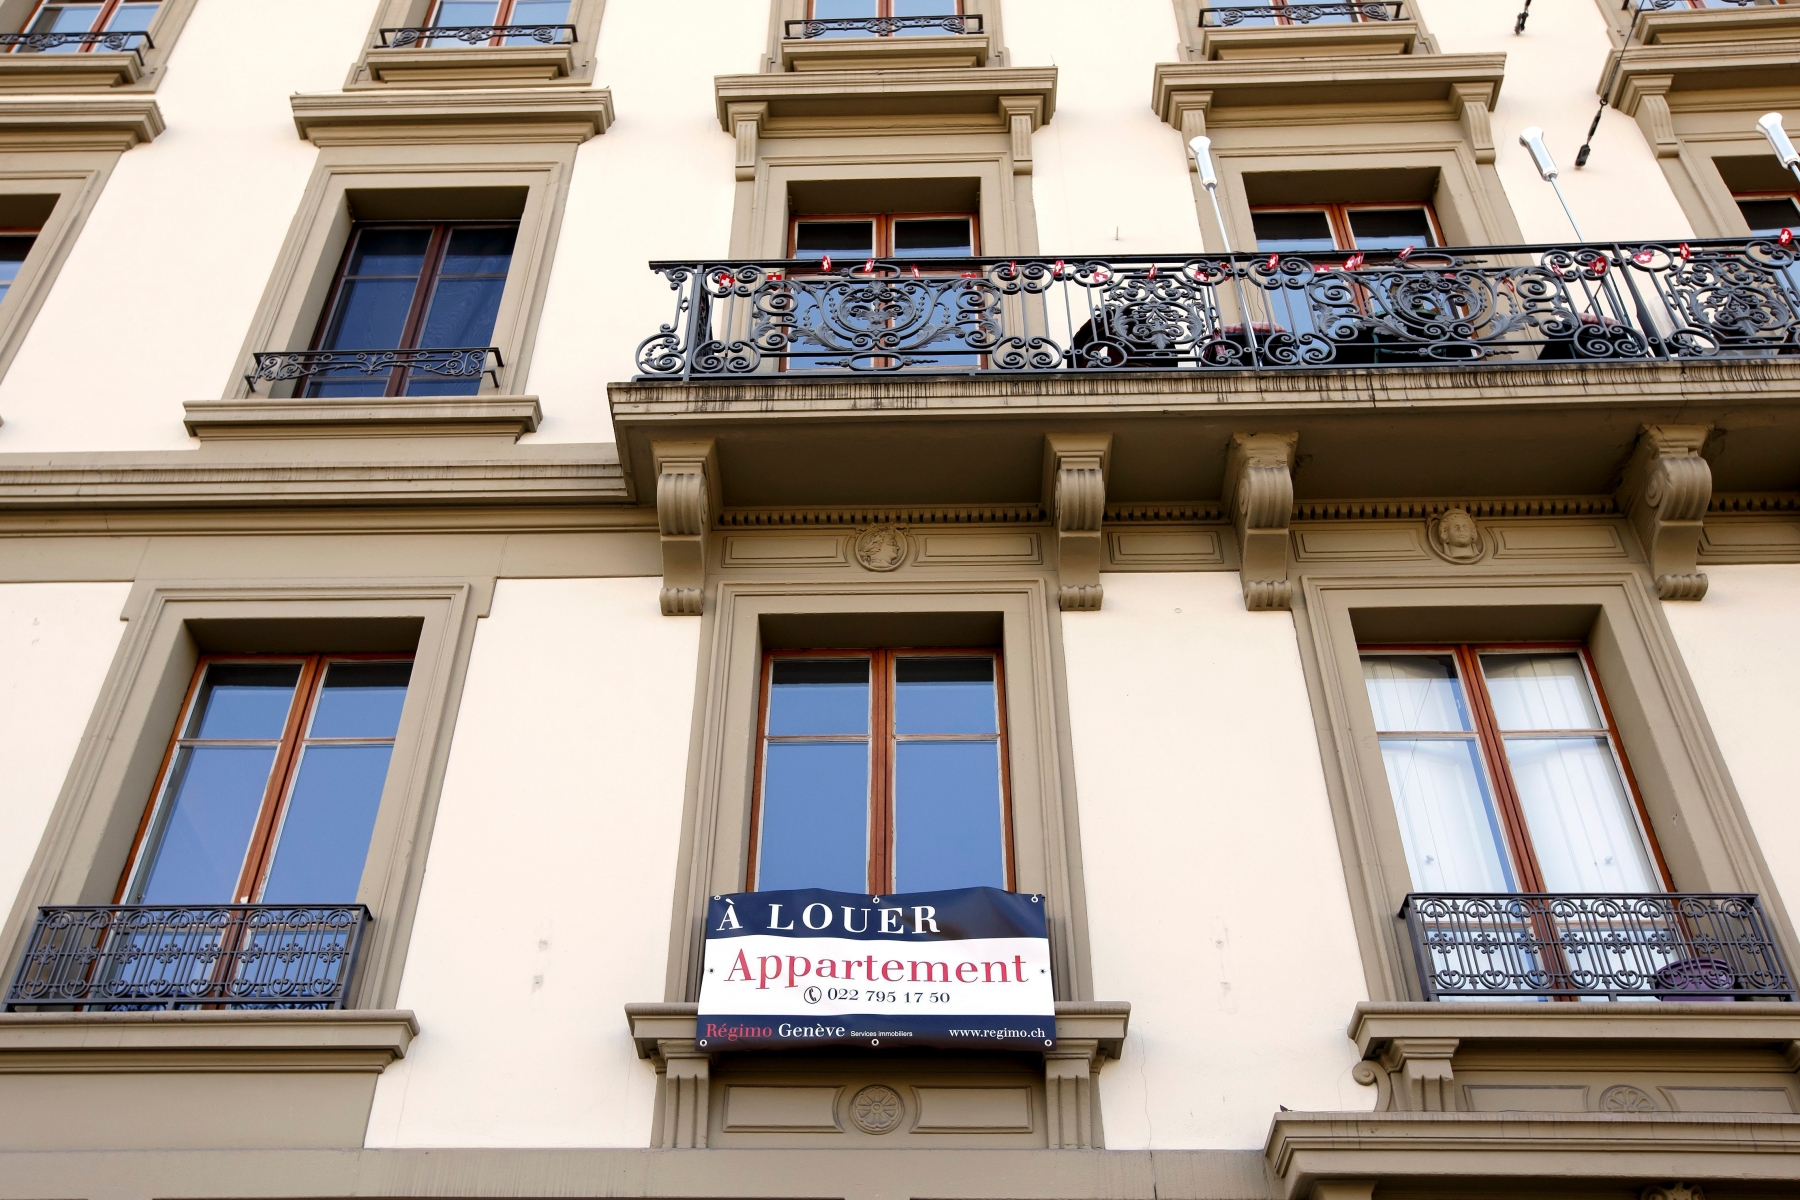 Un panneau "A Louer Appartement" est fixe sur la rambarde d'un balcon de l'immeuble qui abritait l'ancien squat Rhino, situe au boulevard des Philosophes, ce lundi 28 septembre 2015 a Geneve. (KEYSTONE/Salvatore Di Nolfi) SUISSE LOUER LOGEMENT APPARTEMENT